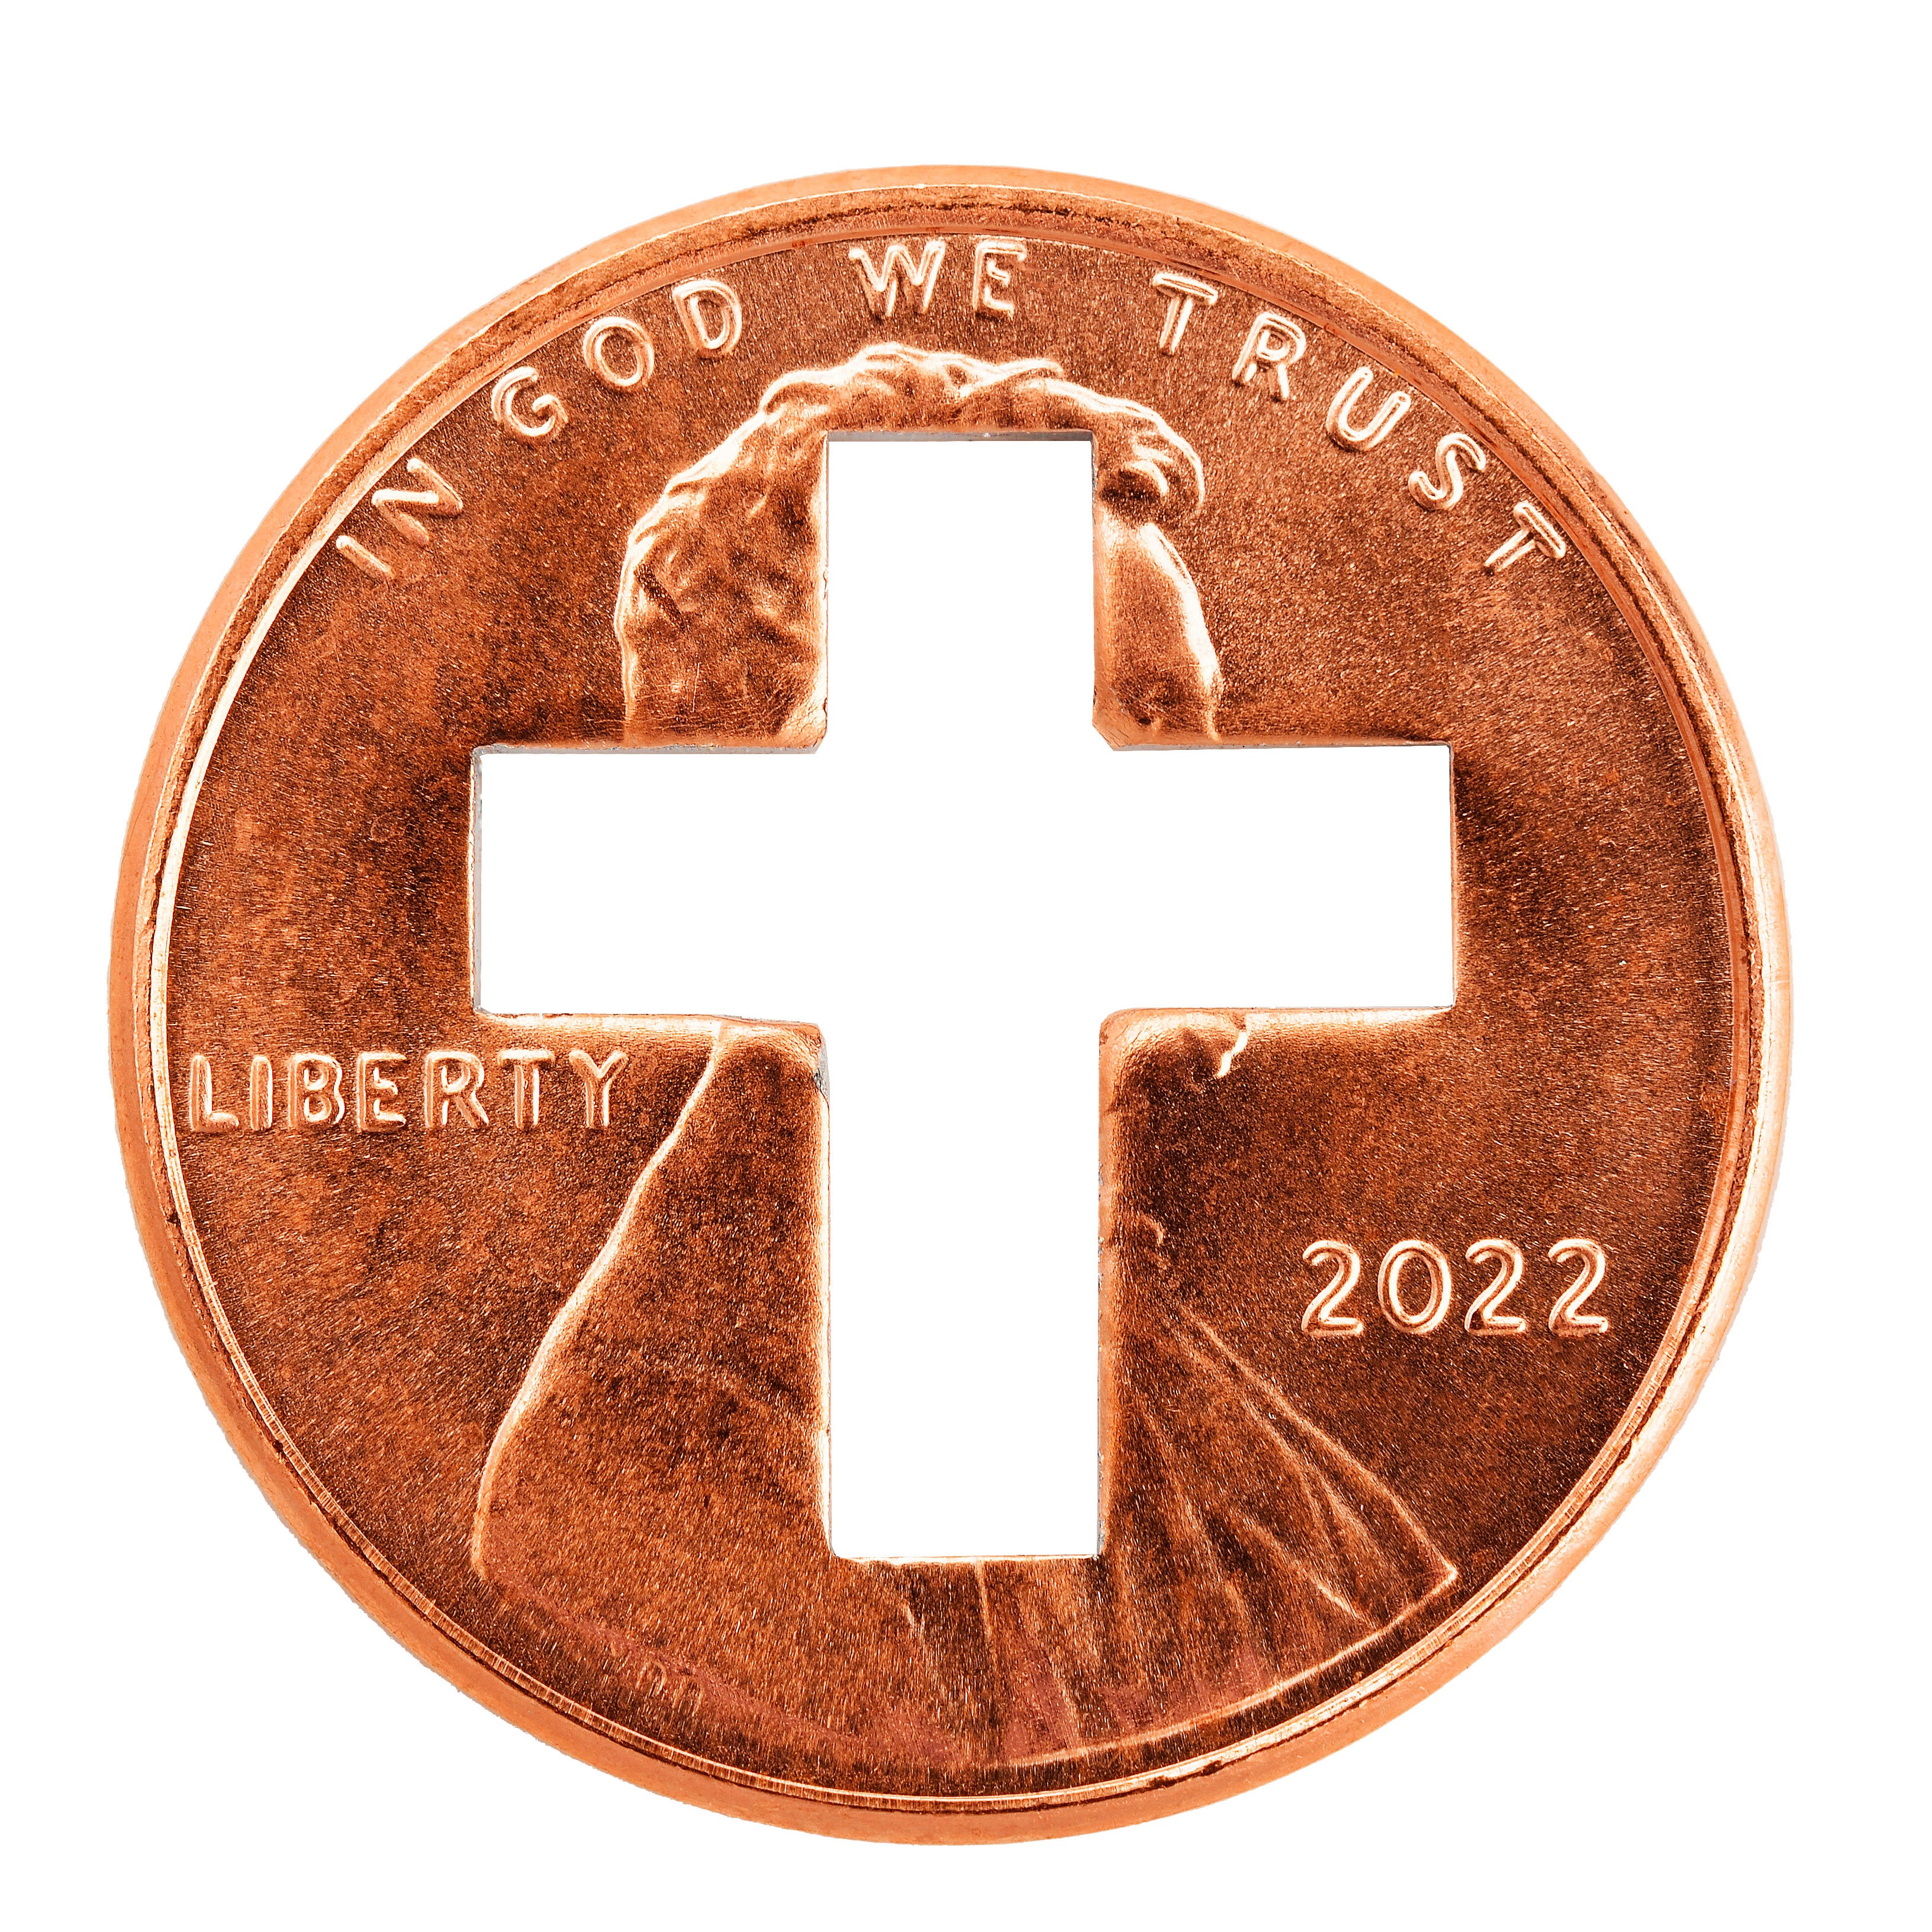 2022 Cross Pennies from Heaven Cross Penny